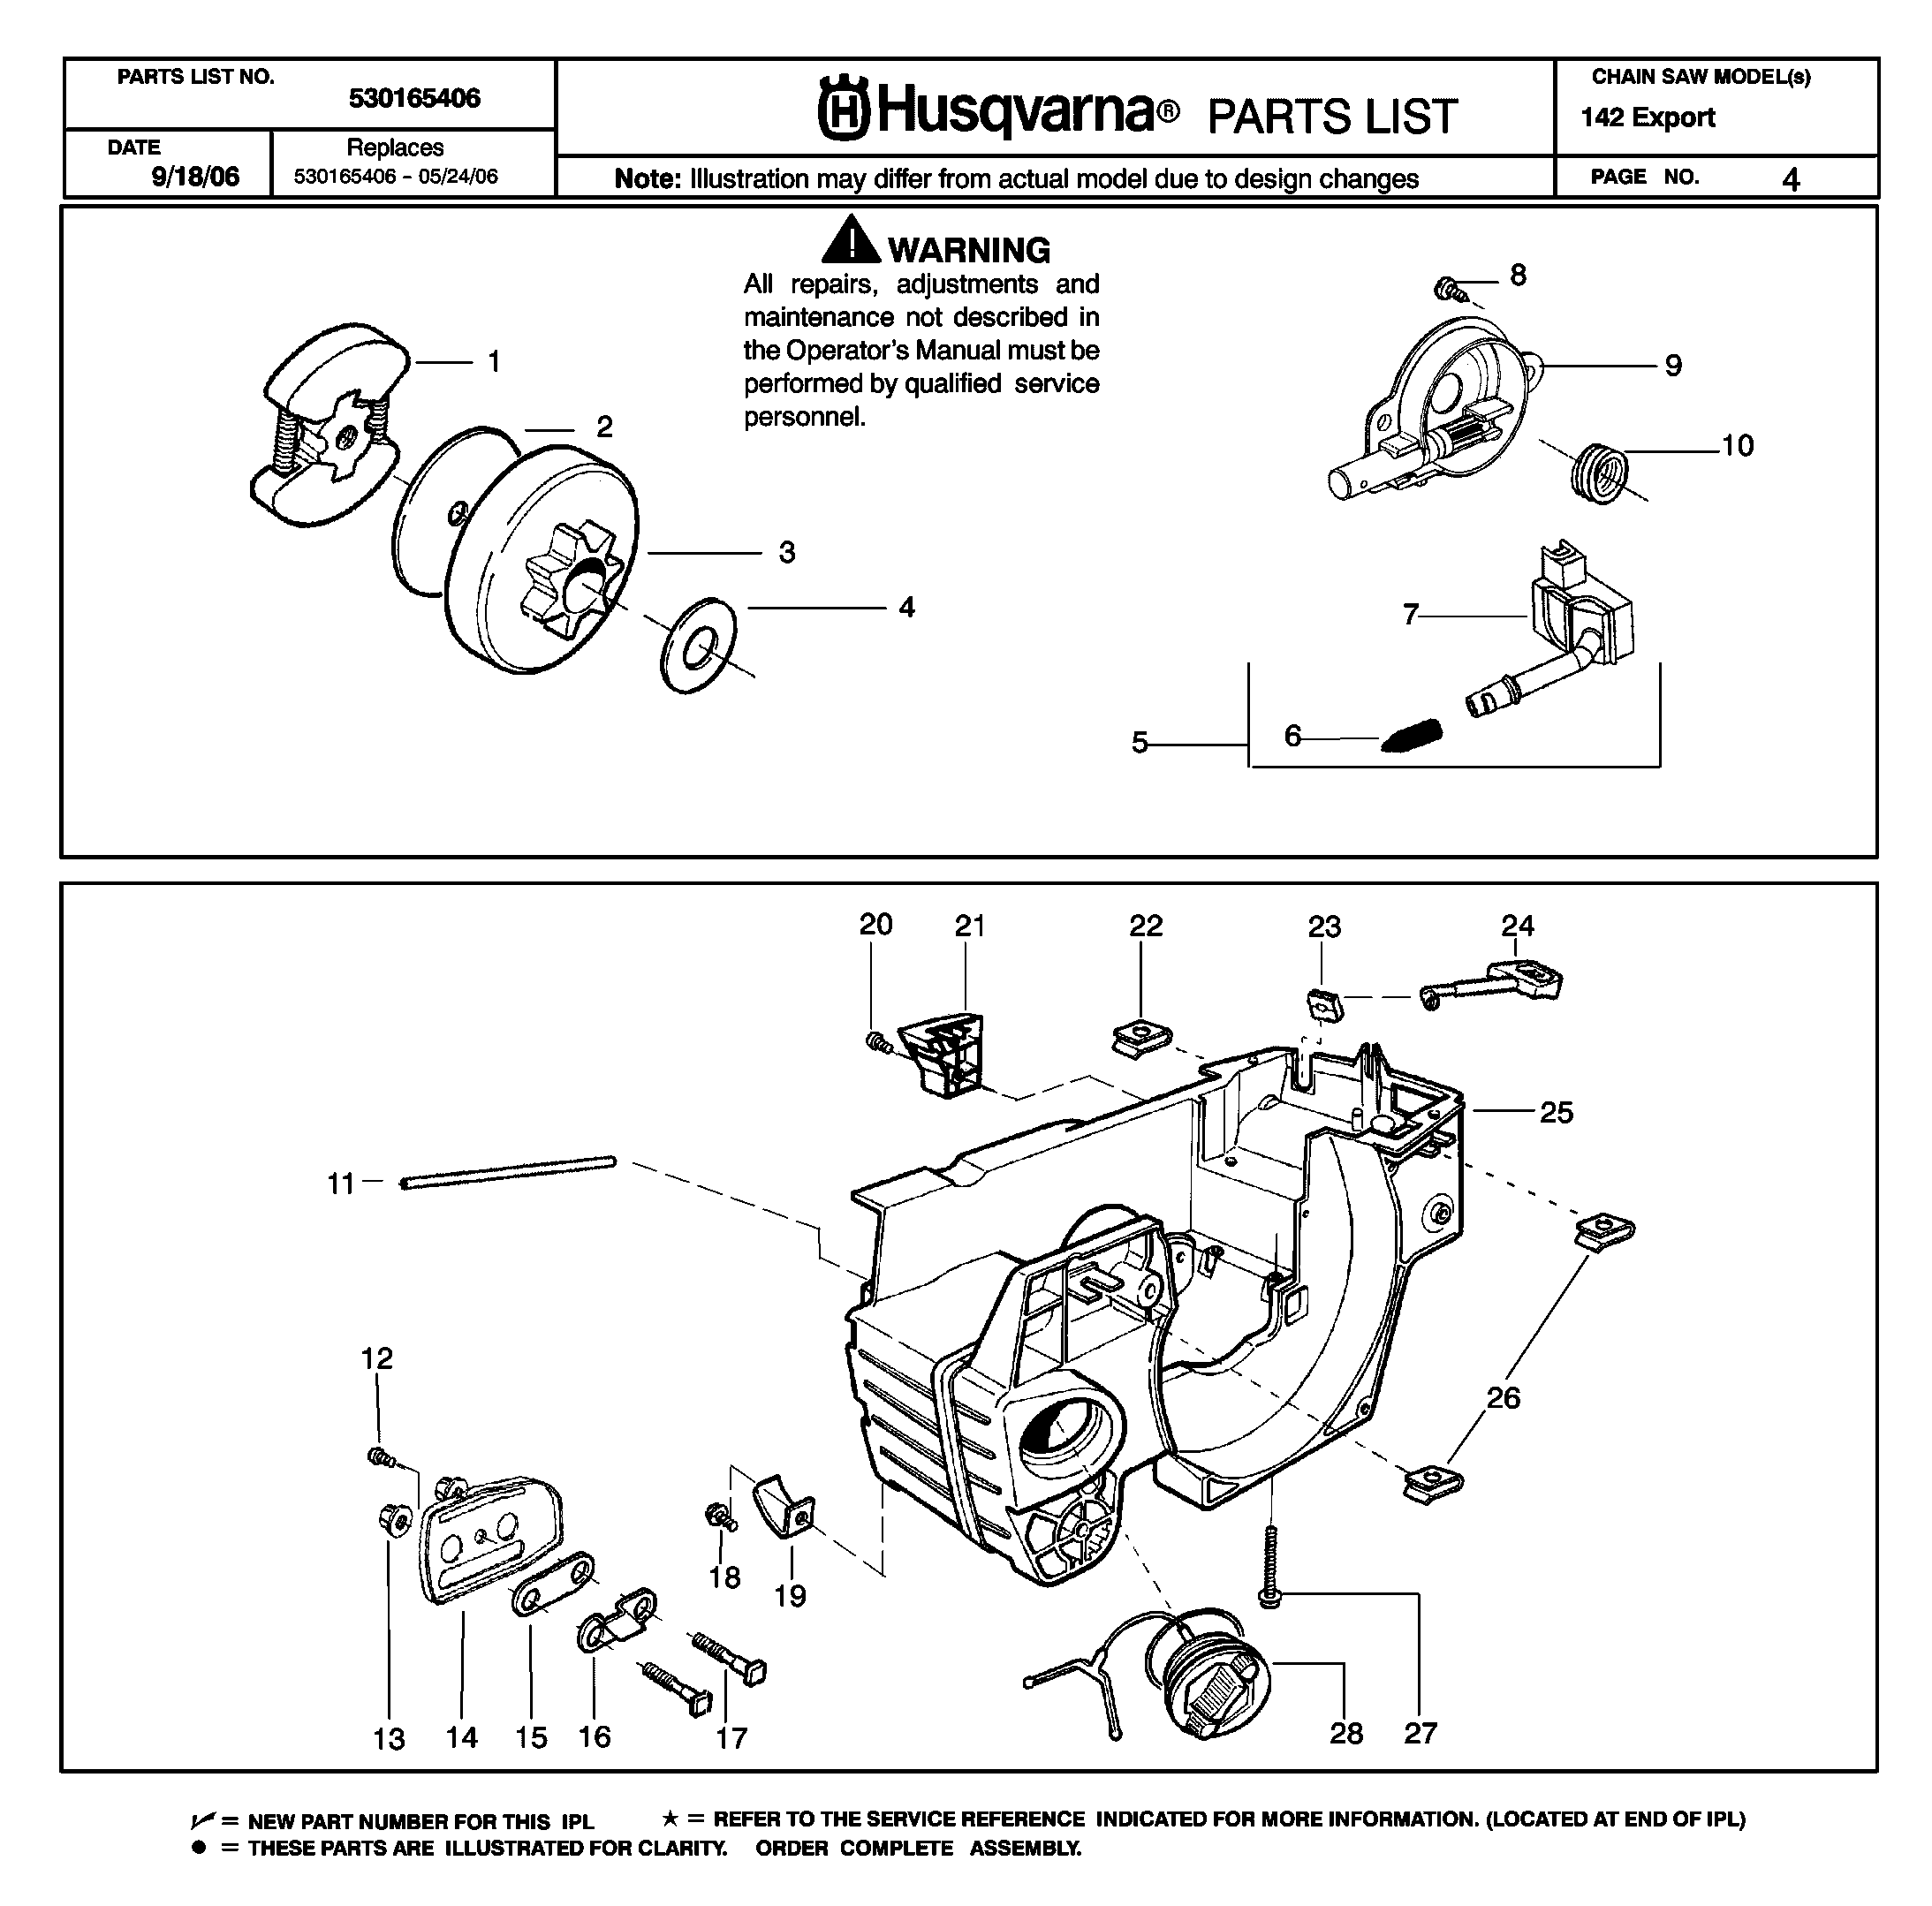 Хускварна-137 бензопила: инструкция по ремонту стартера husqvarna-137 своими руками, неисправности клапана, нет искры